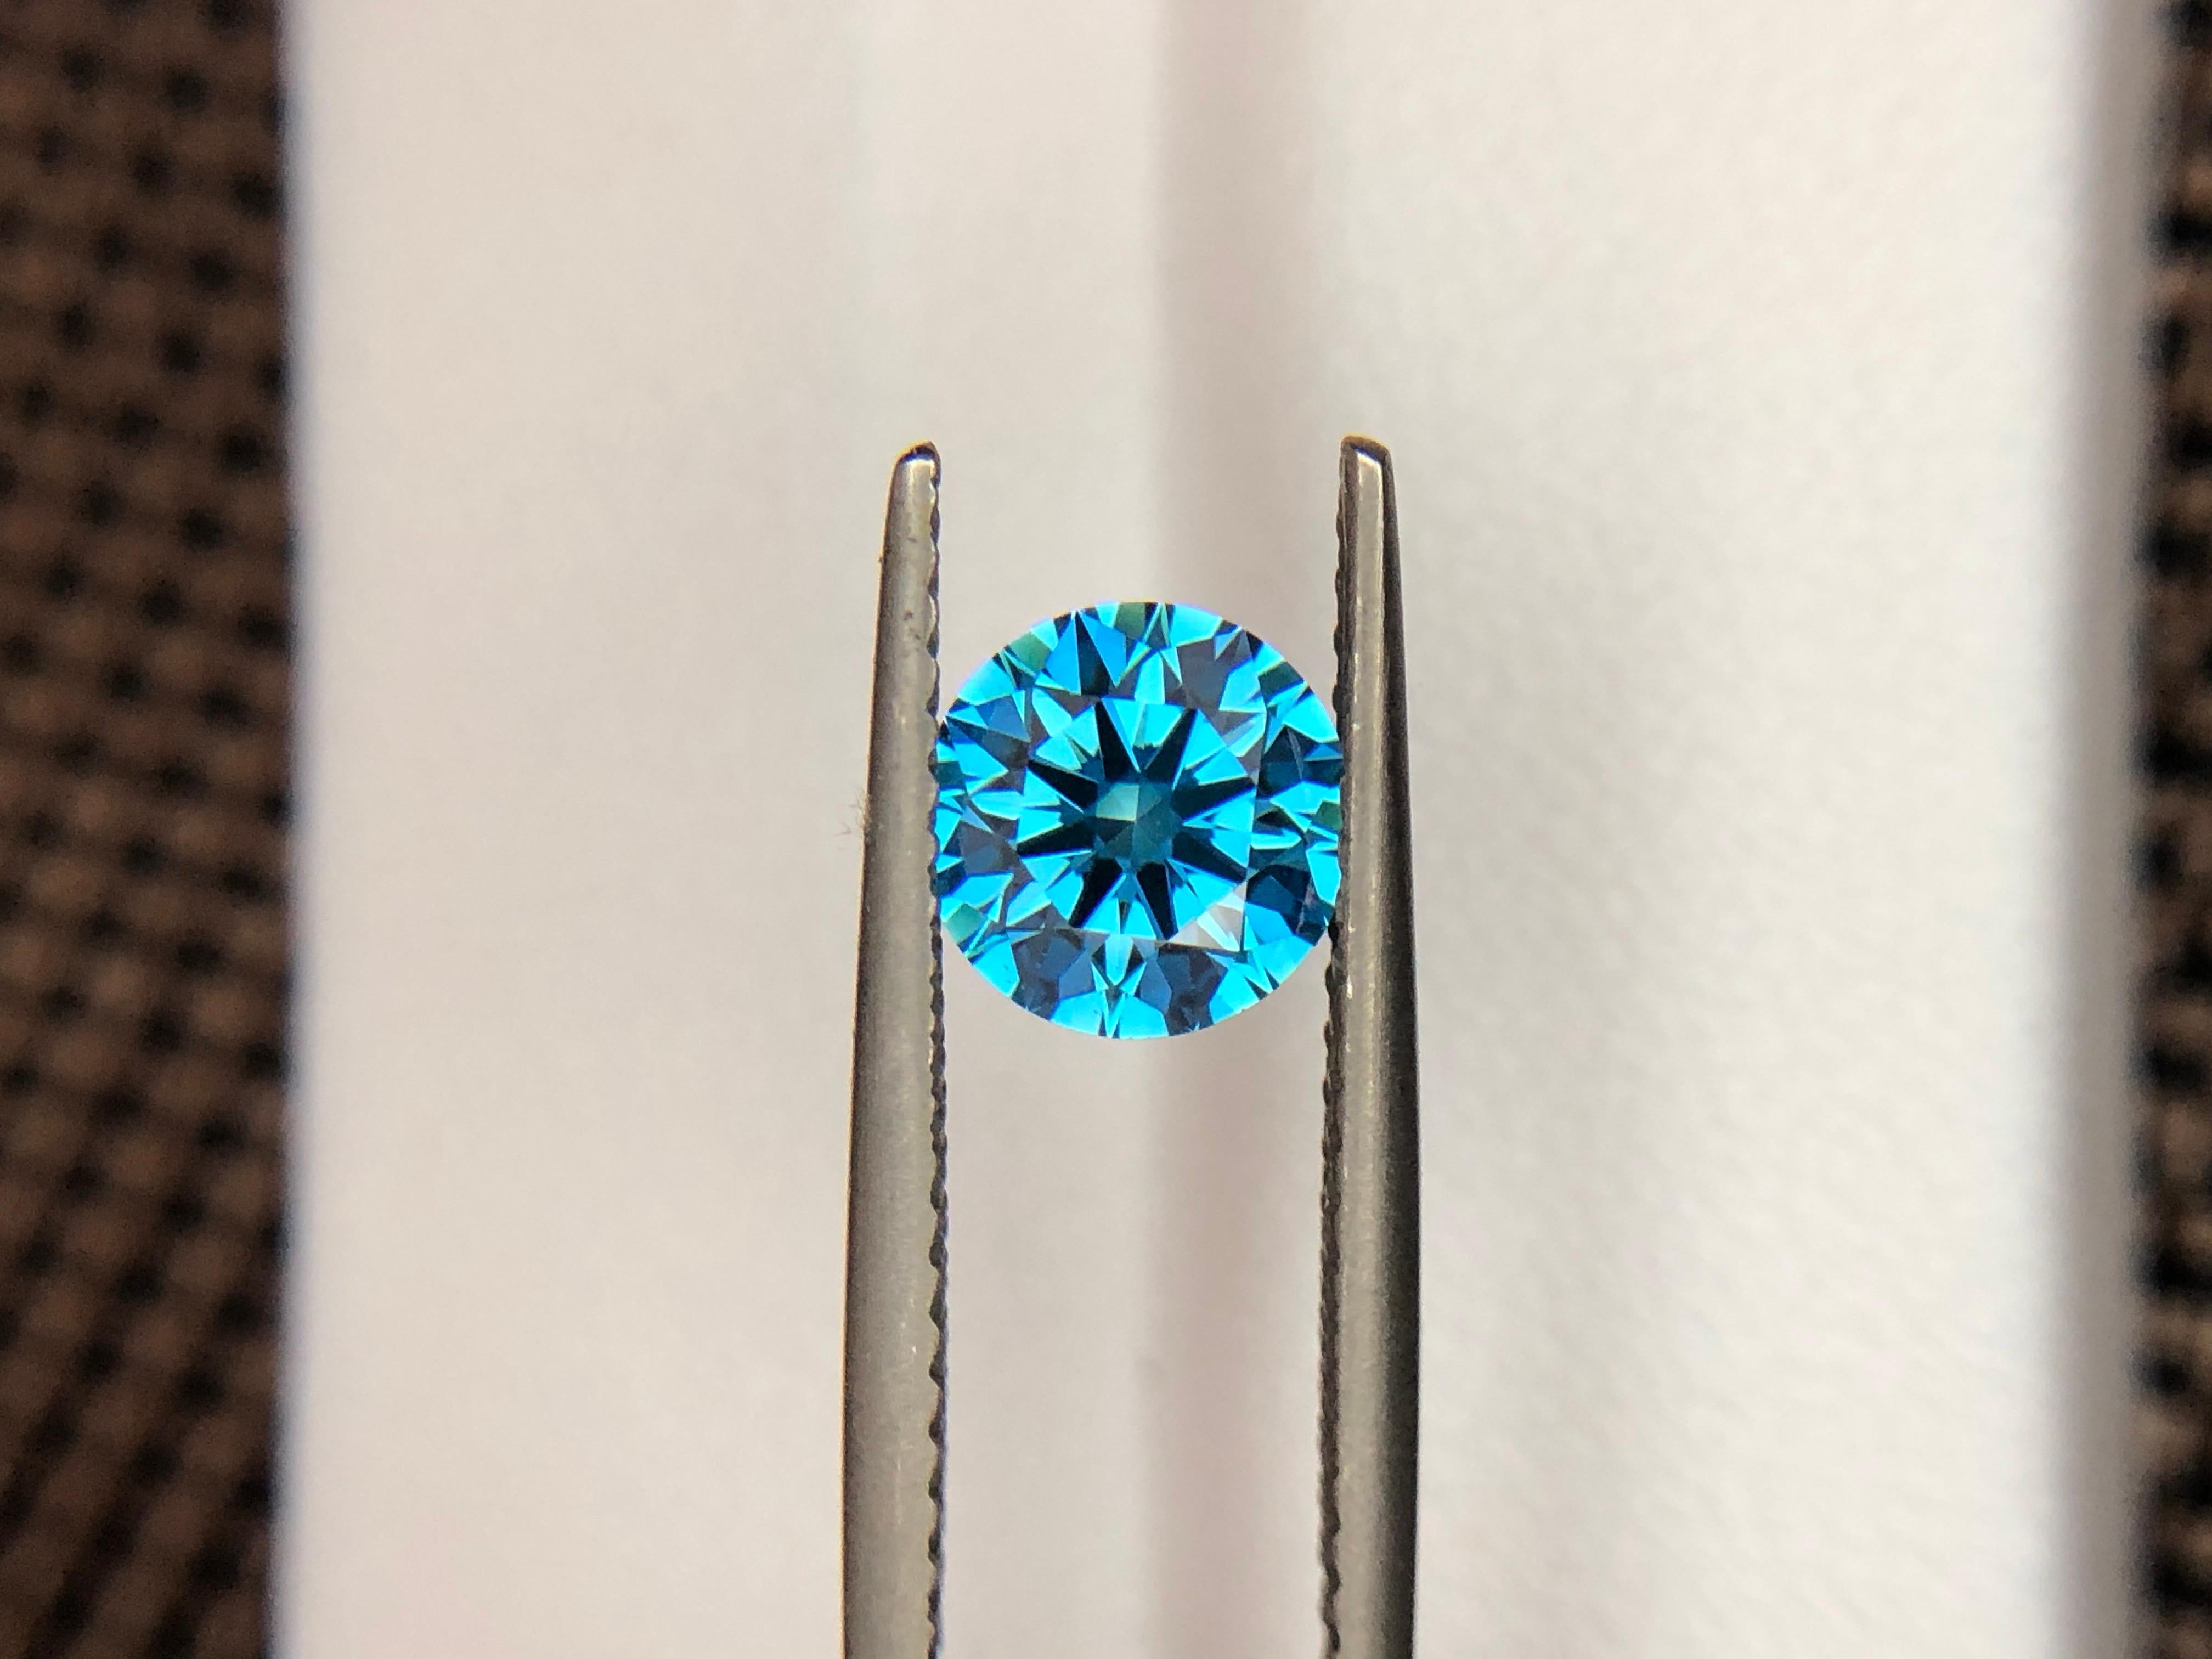 Nous vous présentons notre exquis diamant bleu HPHT rond, 1,03 ct. Plongez dans l'allure captivante de cette perle rare, méticuleusement travaillée à la perfection. Élevez votre collection grâce à sa beauté intemporelle. Les disponibilités sont